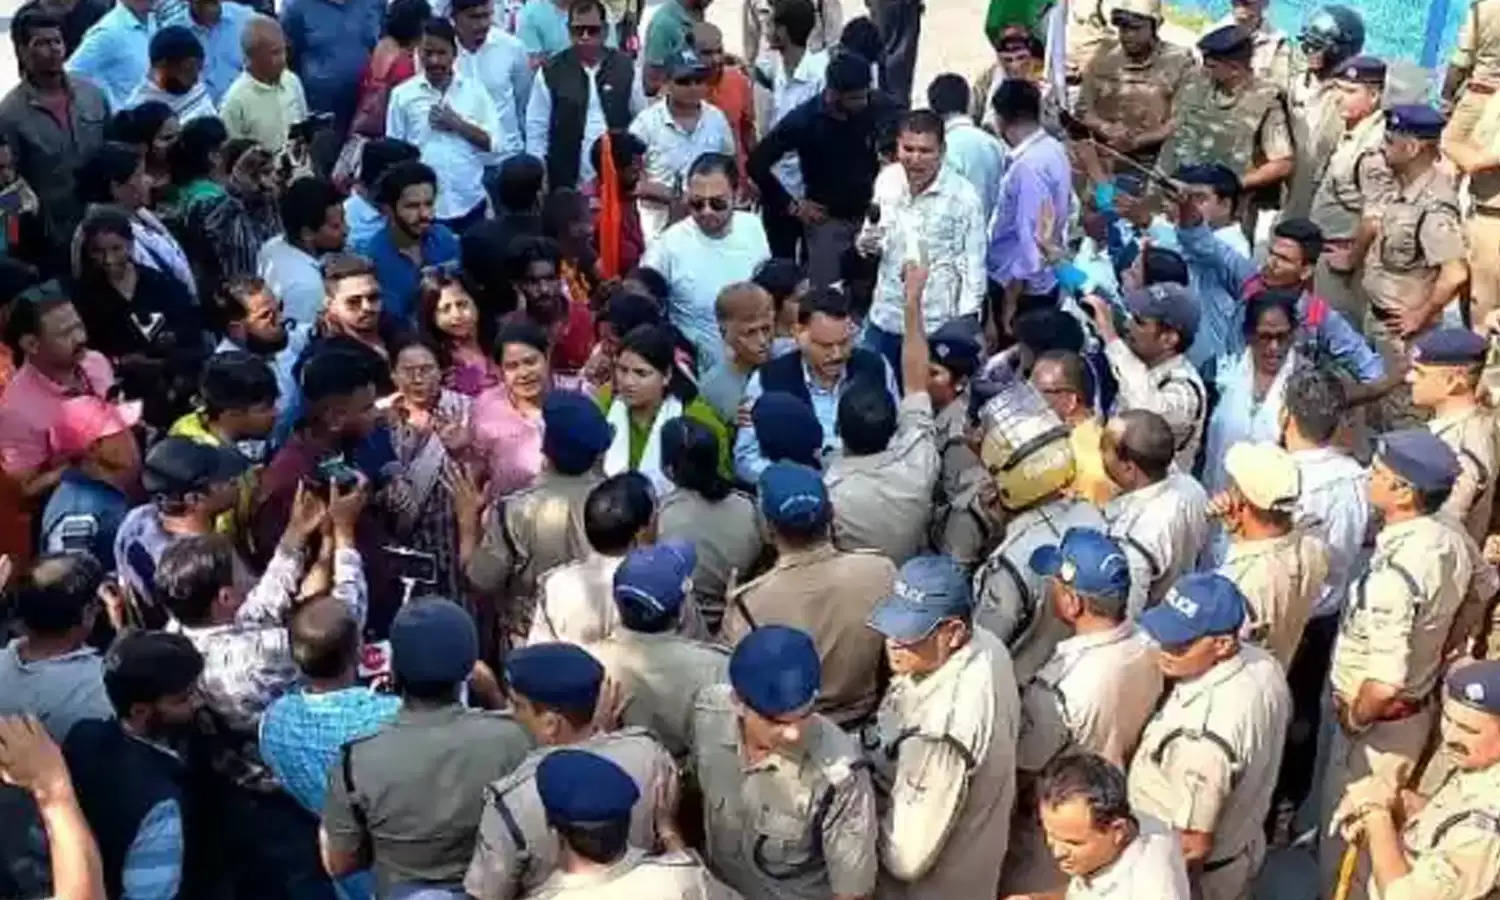 Ankita Murder Case : वनंतरा रिजार्ट जा रही तिरंगा यात्रा को पुलिस ने रोका, 32 गिरफ्तार; पुलिस और प्रदर्शनकारियों के बीच तीखी बहस, लाठियां फटकारी